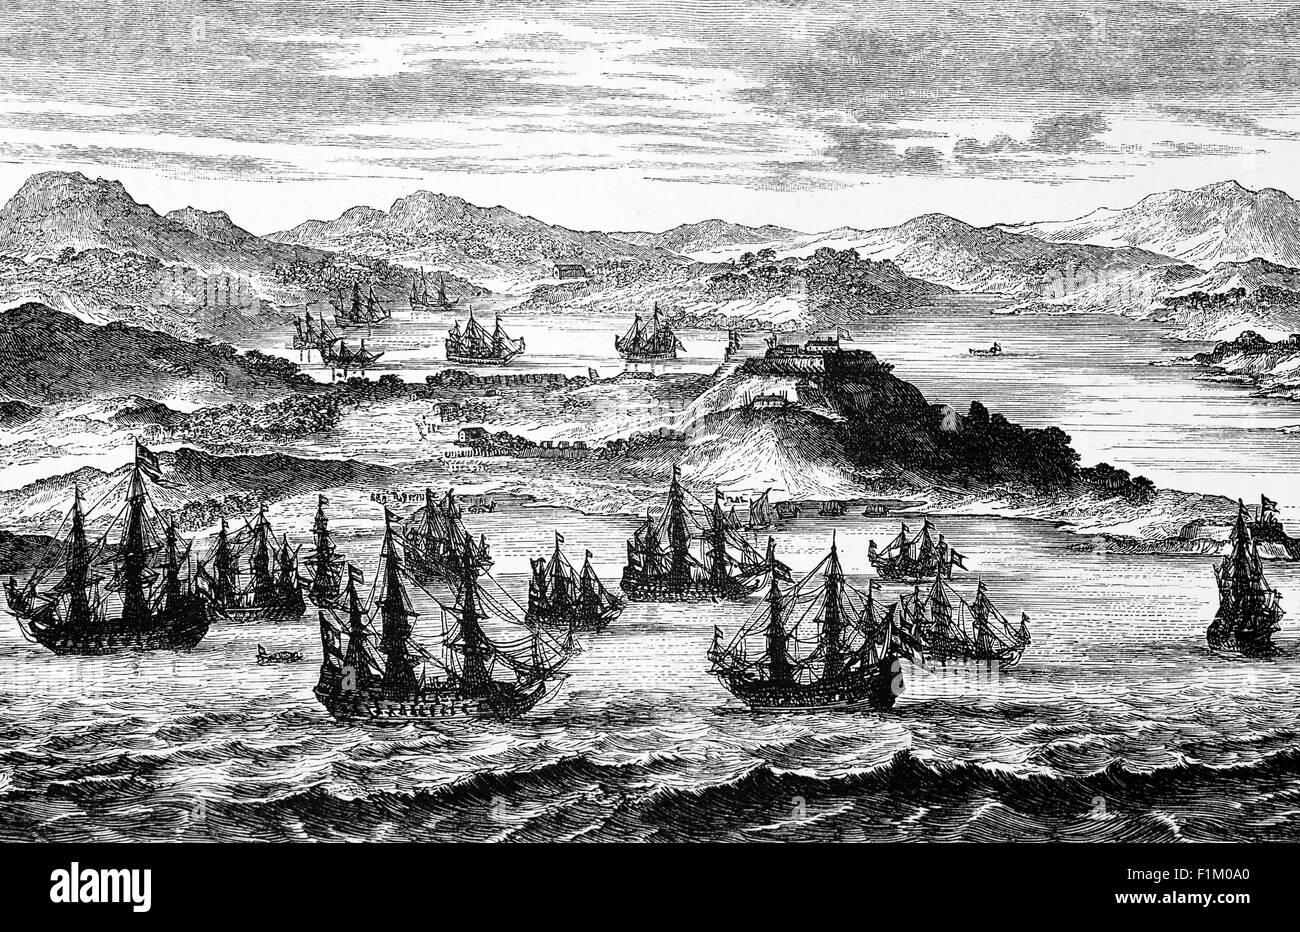 Die spanische Silberflotte, auch bekannt als spanische Schatzflotte oder Westindien-Flotte, ein Konvoi-System von Seewegen, das vom spanischen Imperium von 1566 bis 1790 organisiert wurde und Spanien mit seinen Territorien in Amerika über den Atlantik verband. Die Konvois waren Mehrzweckfrachtflotten, die für den Transport einer Vielzahl von Gegenständen verwendet wurden, darunter Silber, Gold, Edelsteine, Perlen, Gewürze, Zucker, Tabak, Seide und andere exotische Waren aus den Überseegebieten des spanischen Reiches auf das spanische Festland. Stockfoto